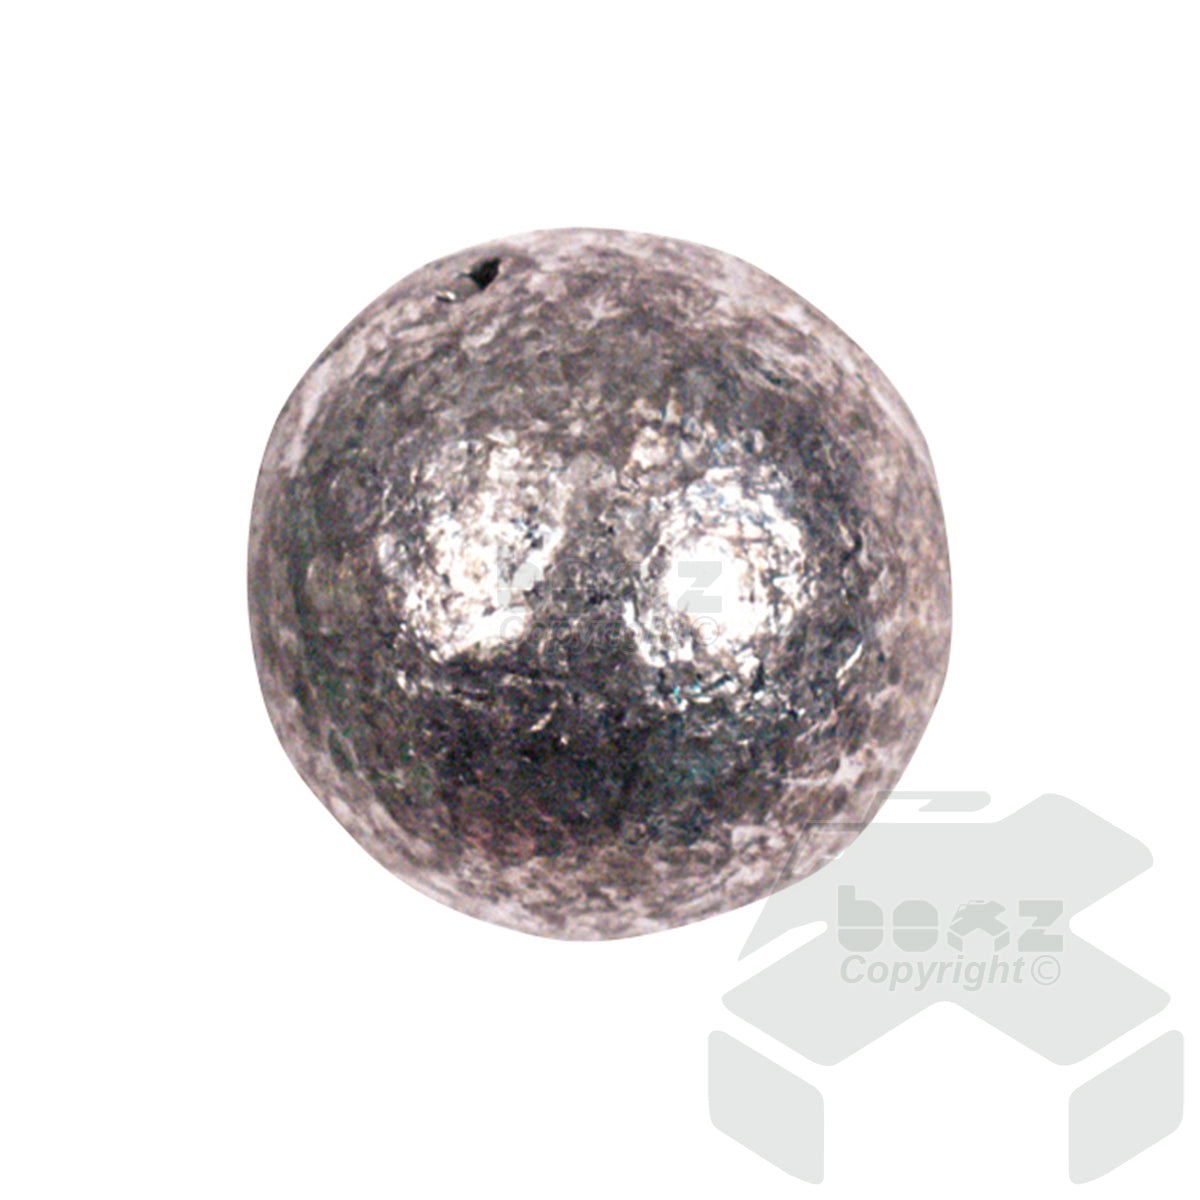 Seatech Ball Weights Zinc